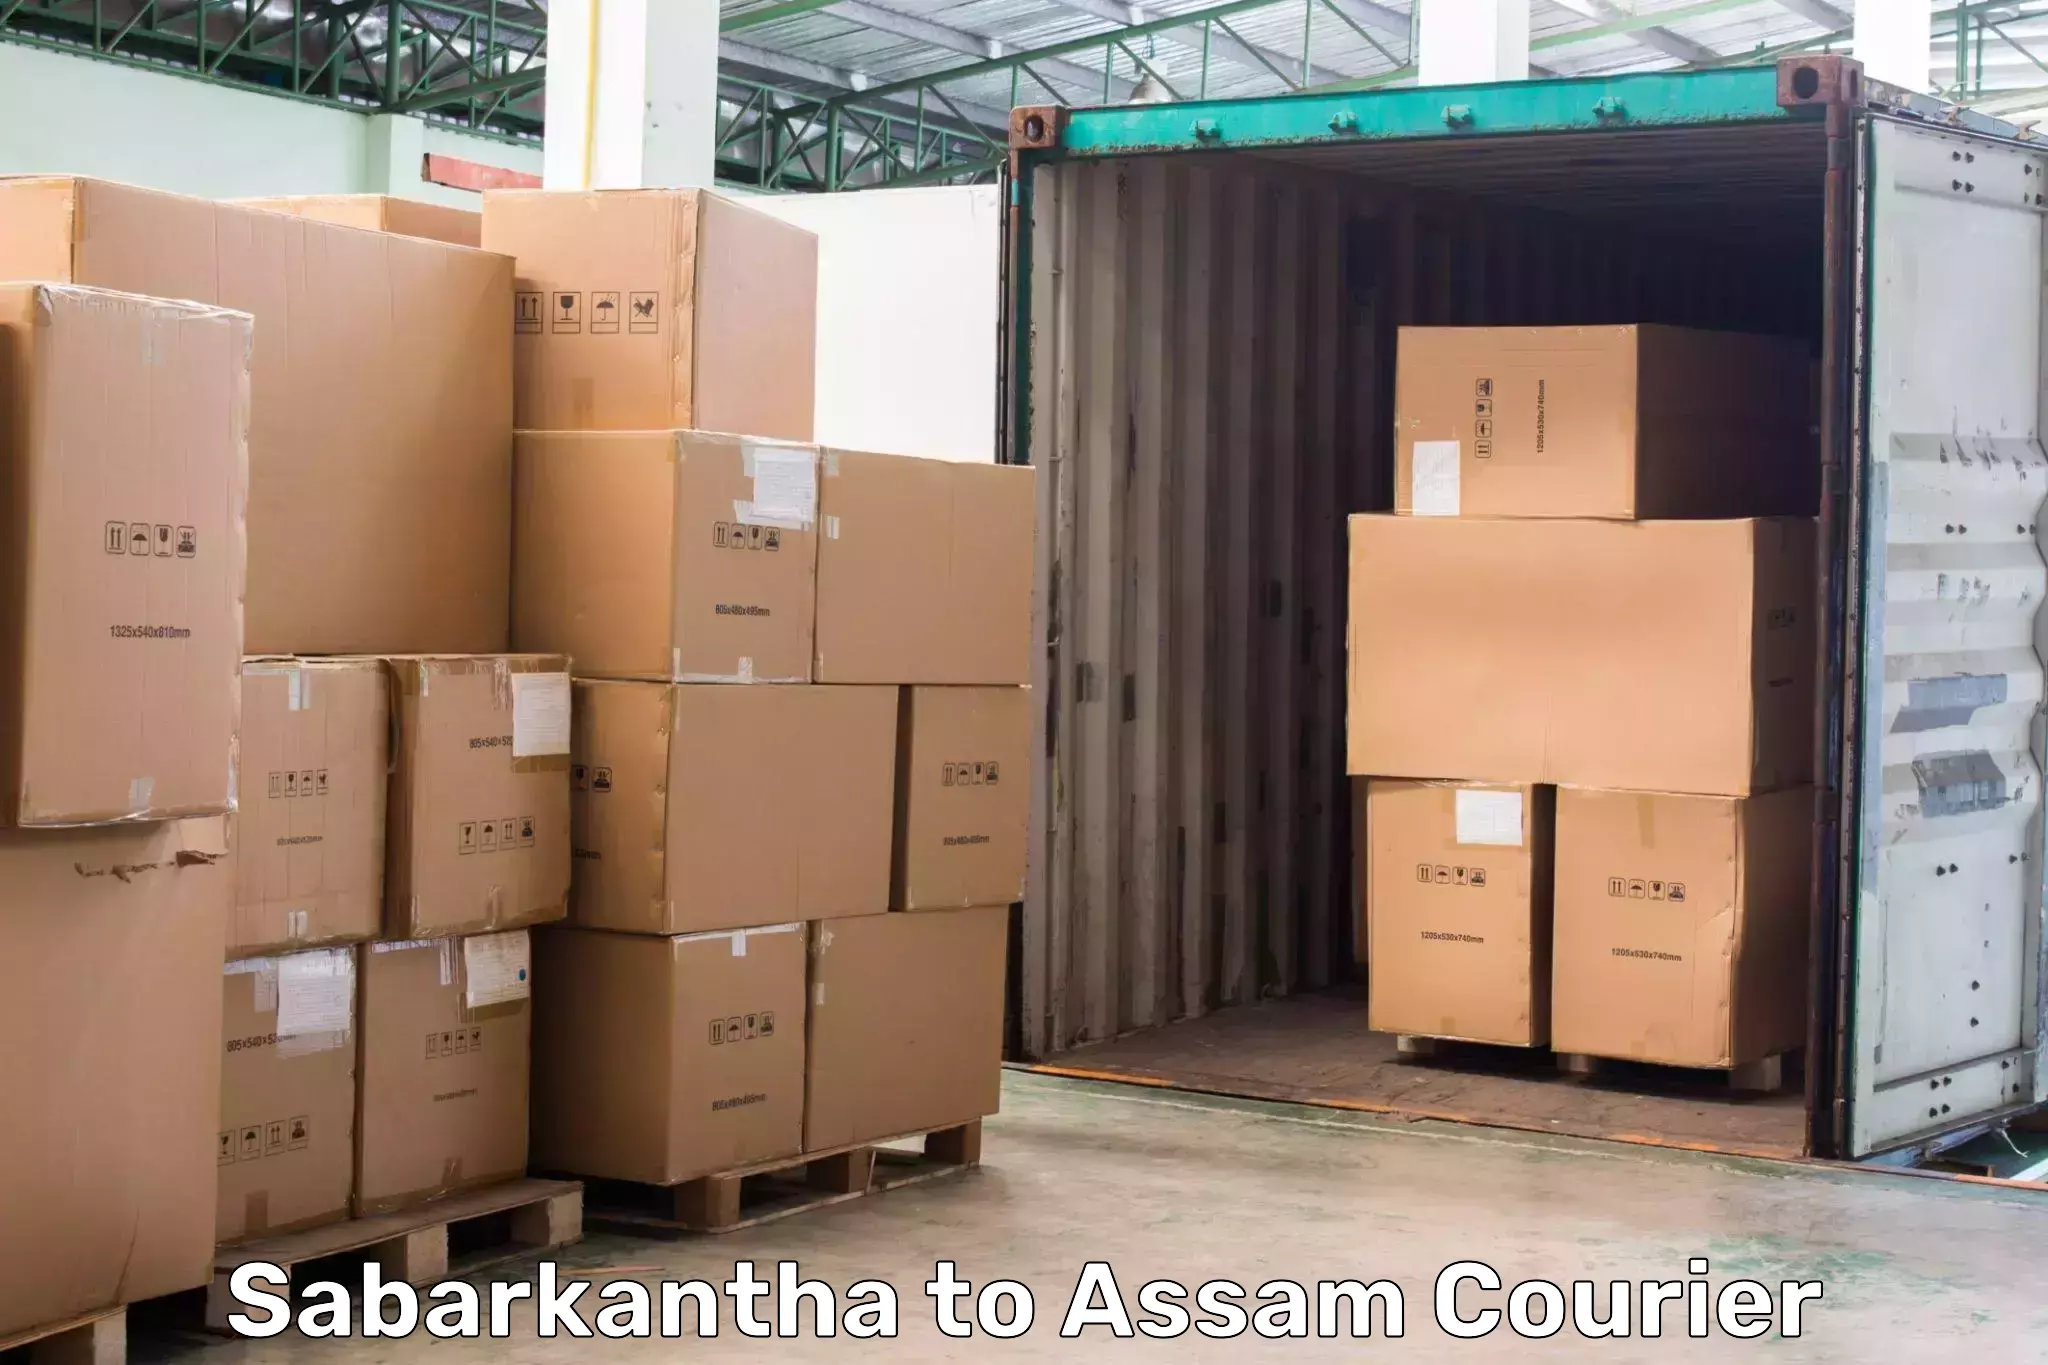 Affordable parcel service Sabarkantha to Dibrugarh